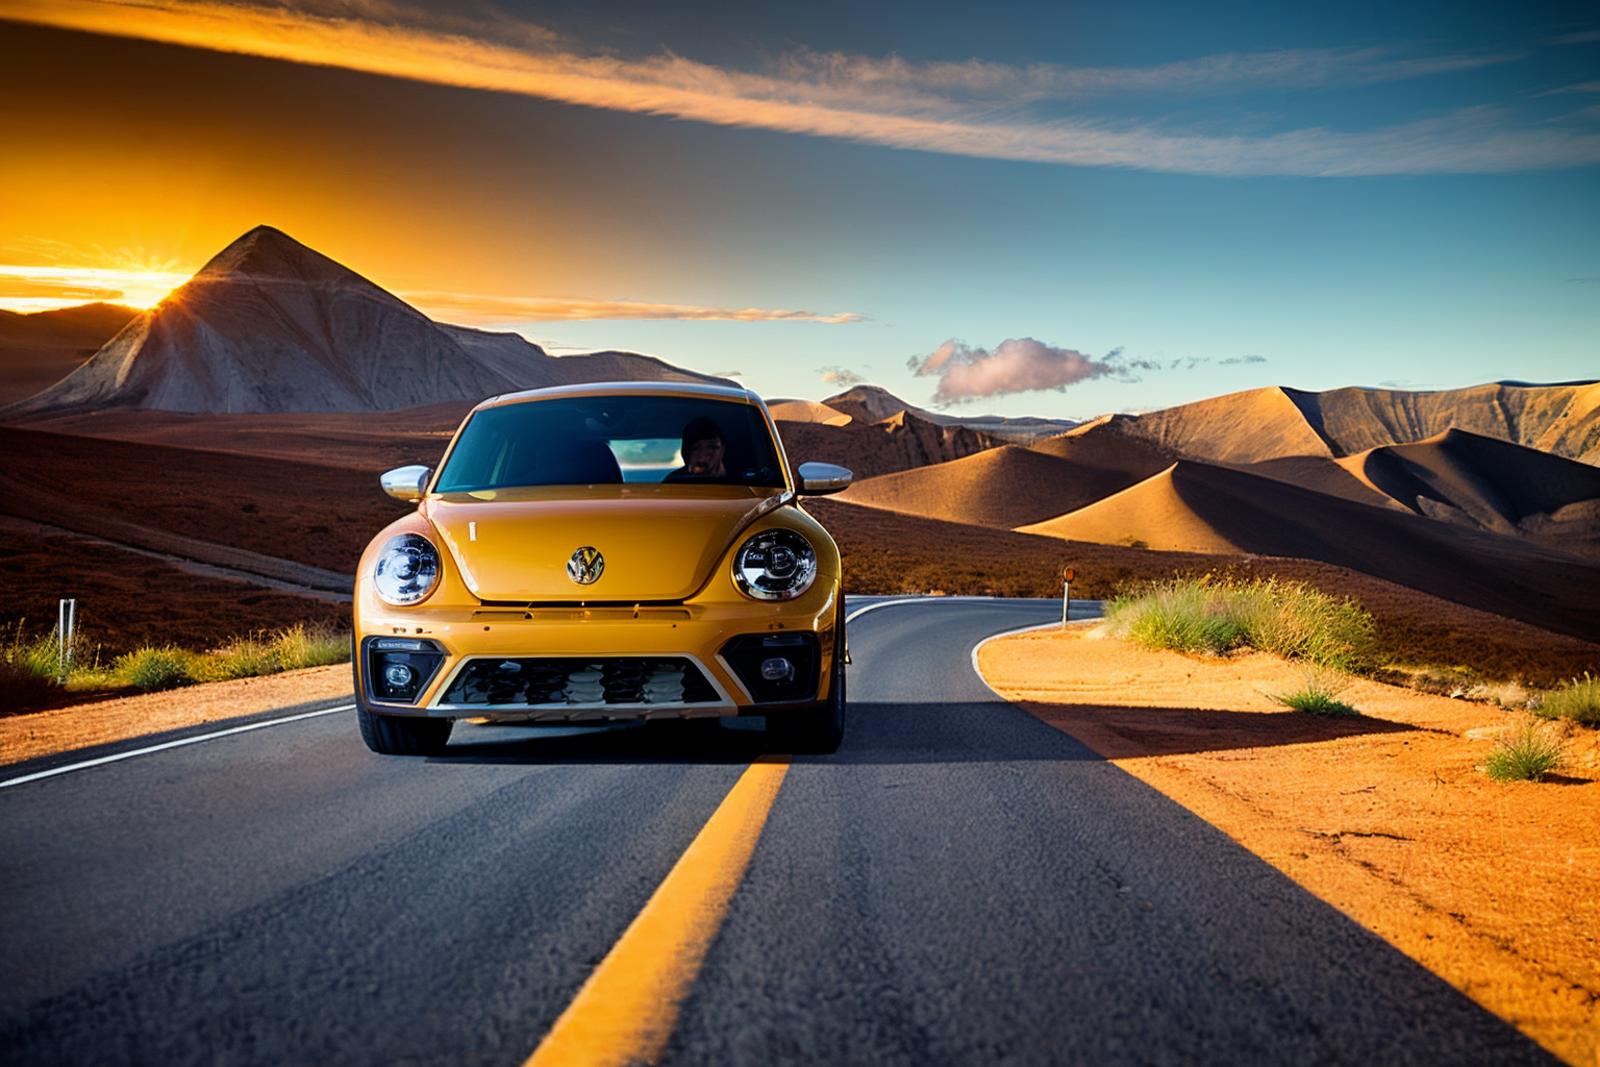 Volkswagen Beetle Dune (car LoRA) image by dbst17